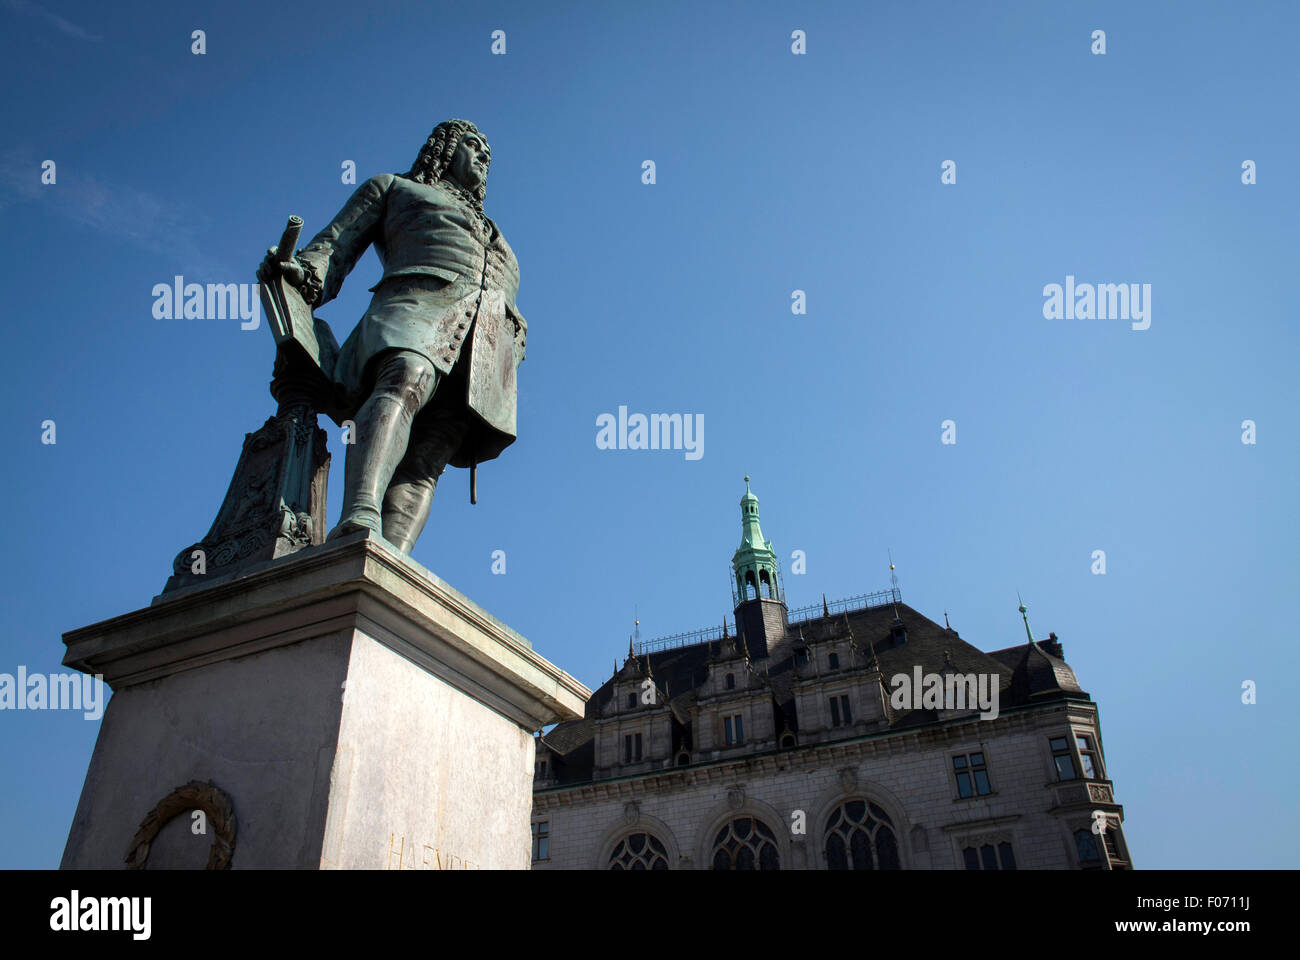 Halle, Alemania es el lugar de nacimiento del compositor Georg Friedrich Händel. Una estatua se erige en la ciudad mercado para su honor. Foto de stock